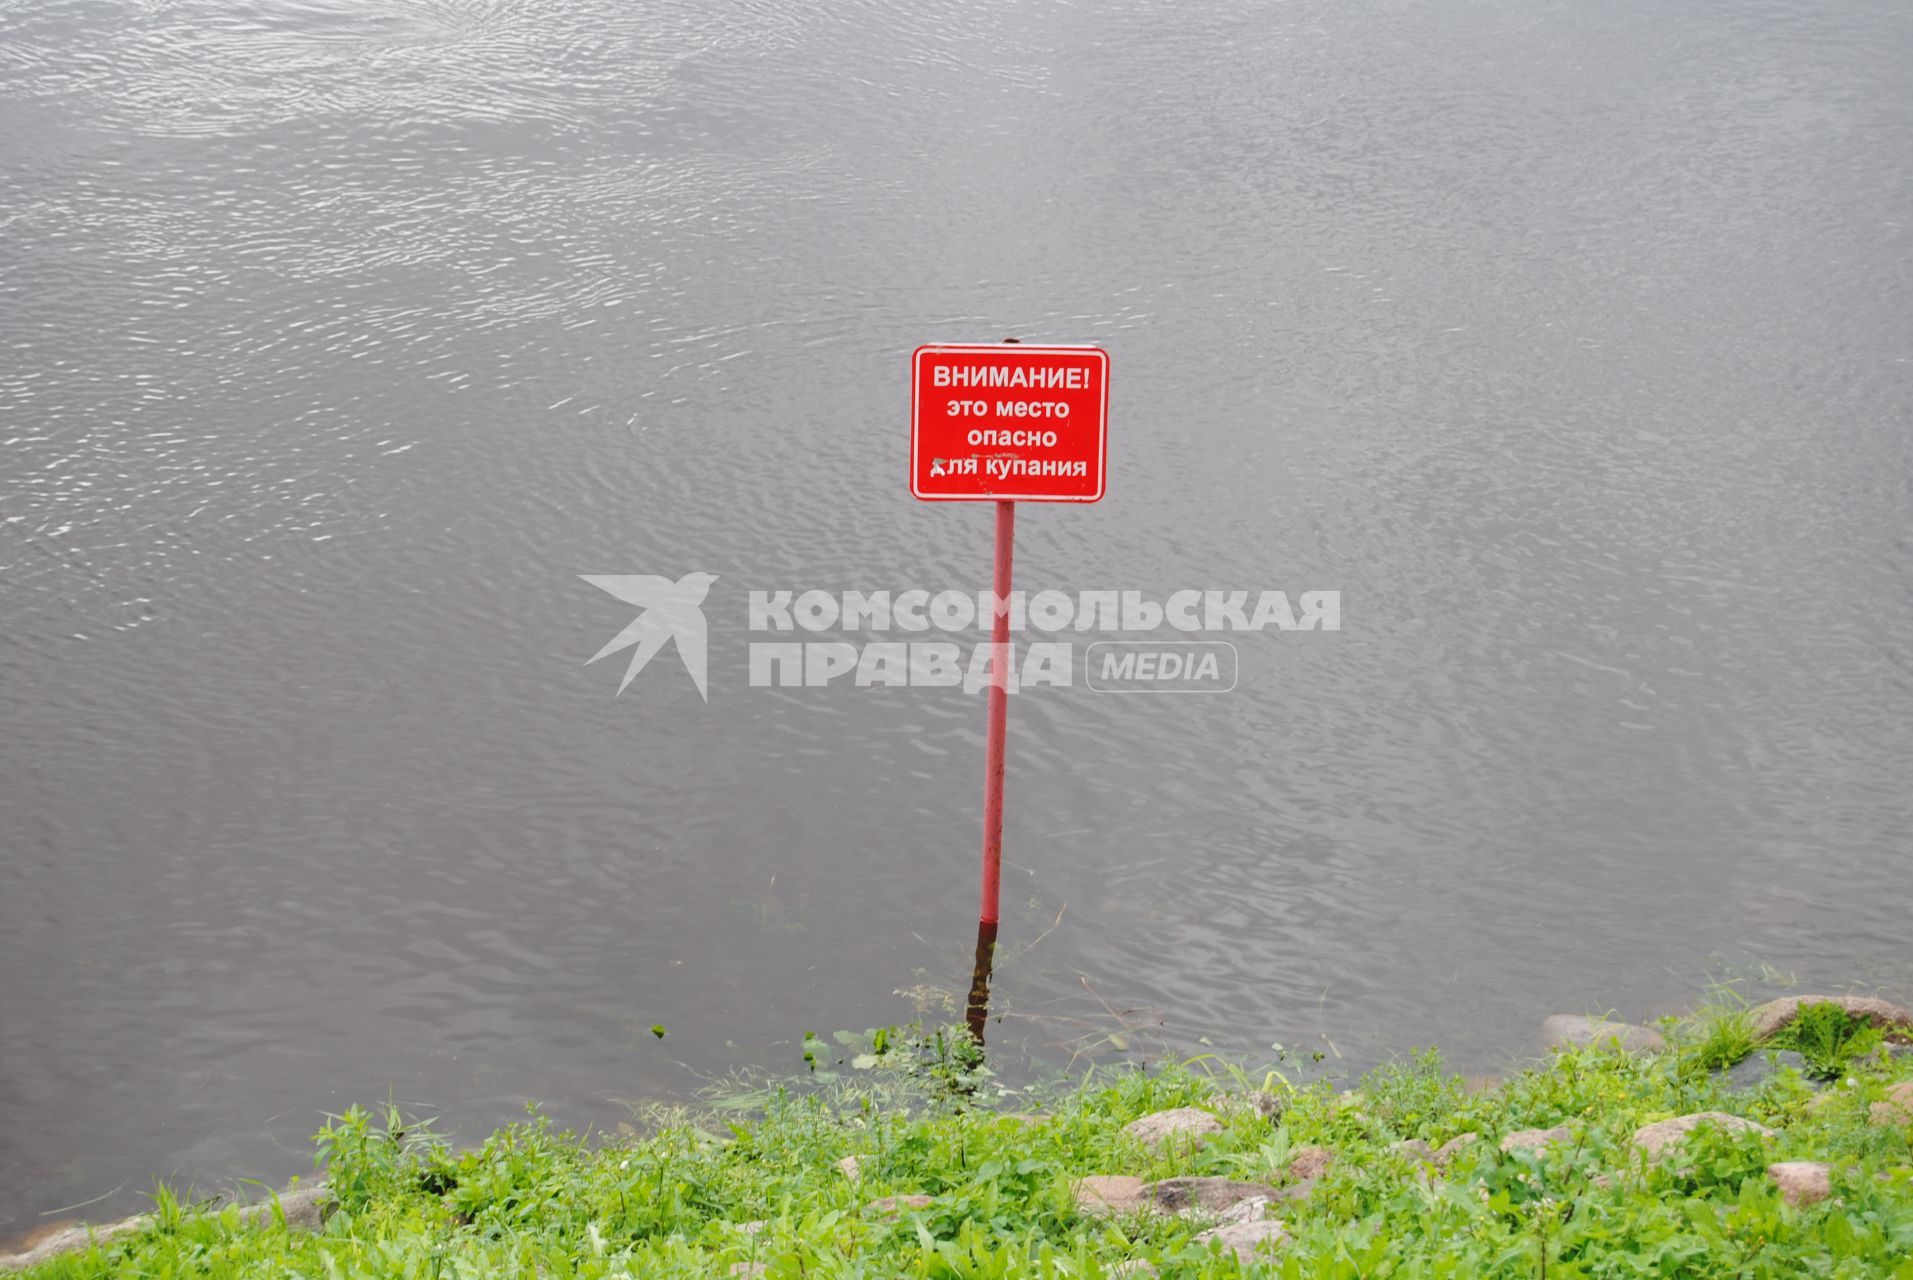 Псков.  Предупреждающая табличка с надписью `Внимание! Это место опасно для купания`.